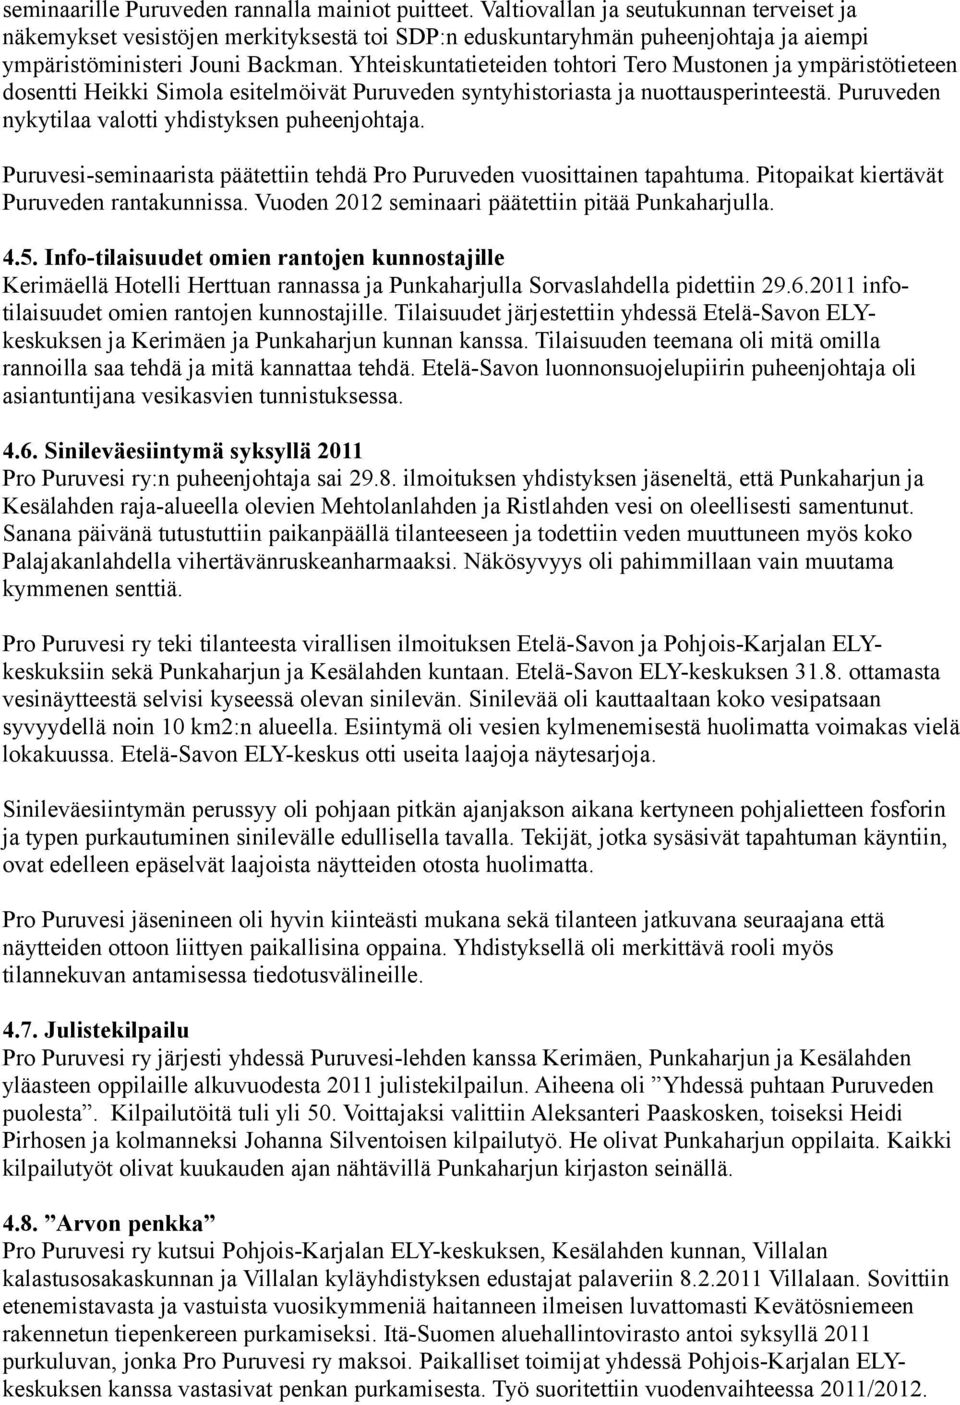 Yhteiskuntatieteiden tohtori Tero Mustonen ja ympäristötieteen dosentti Heikki Simola esitelmöivät Puruveden syntyhistoriasta ja nuottausperinteestä.